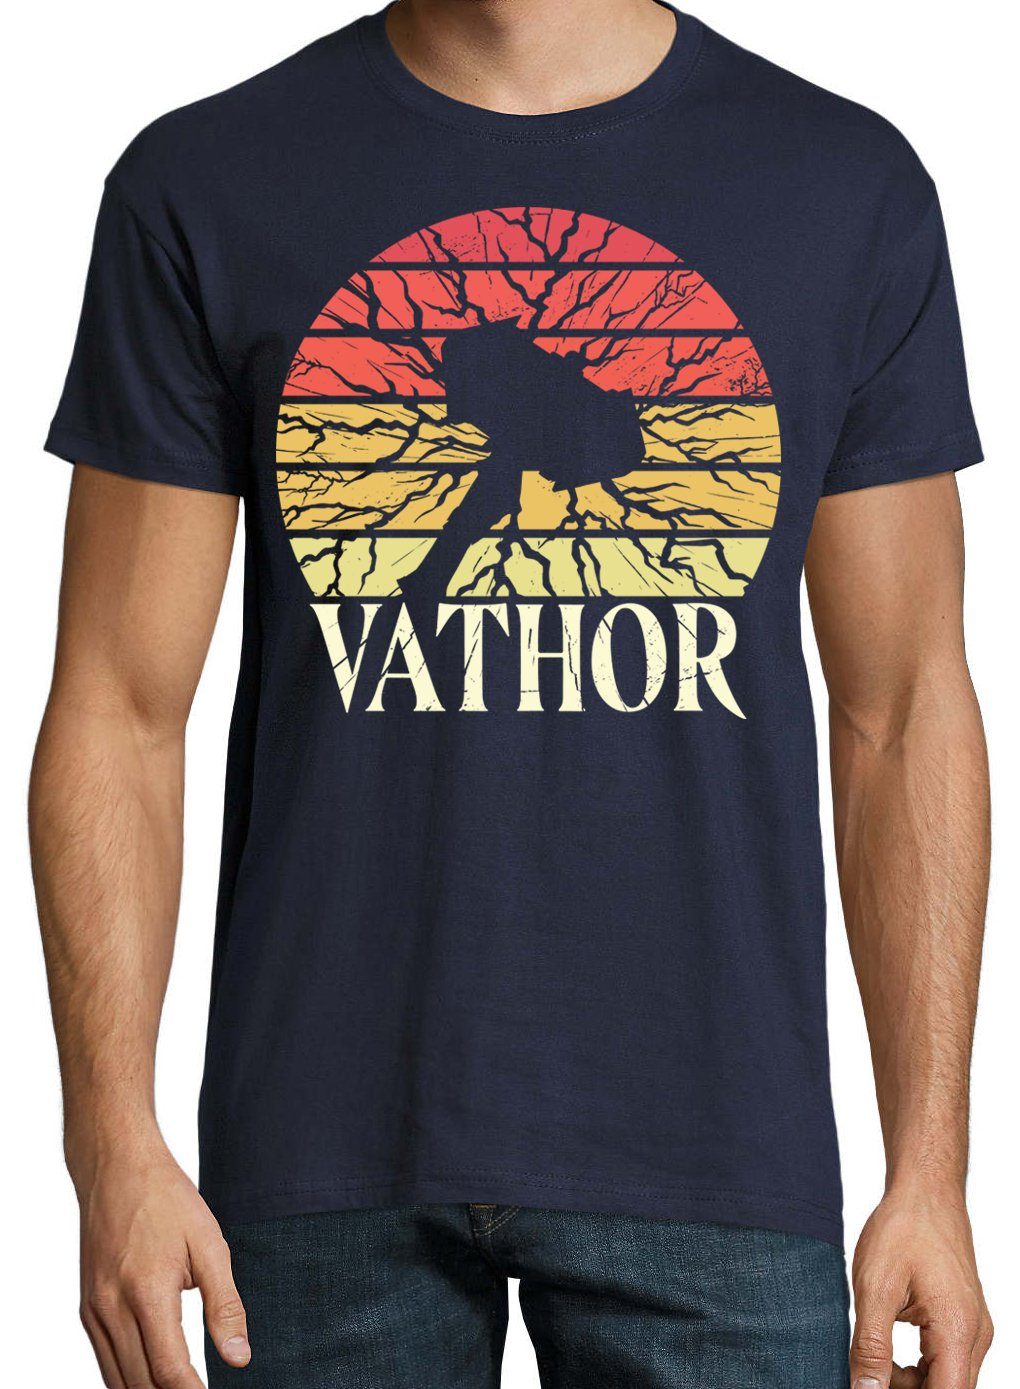 Vathor Frontdruck Trendigem Herren Navy Youth mit T-Shirt Designz T-Shirt